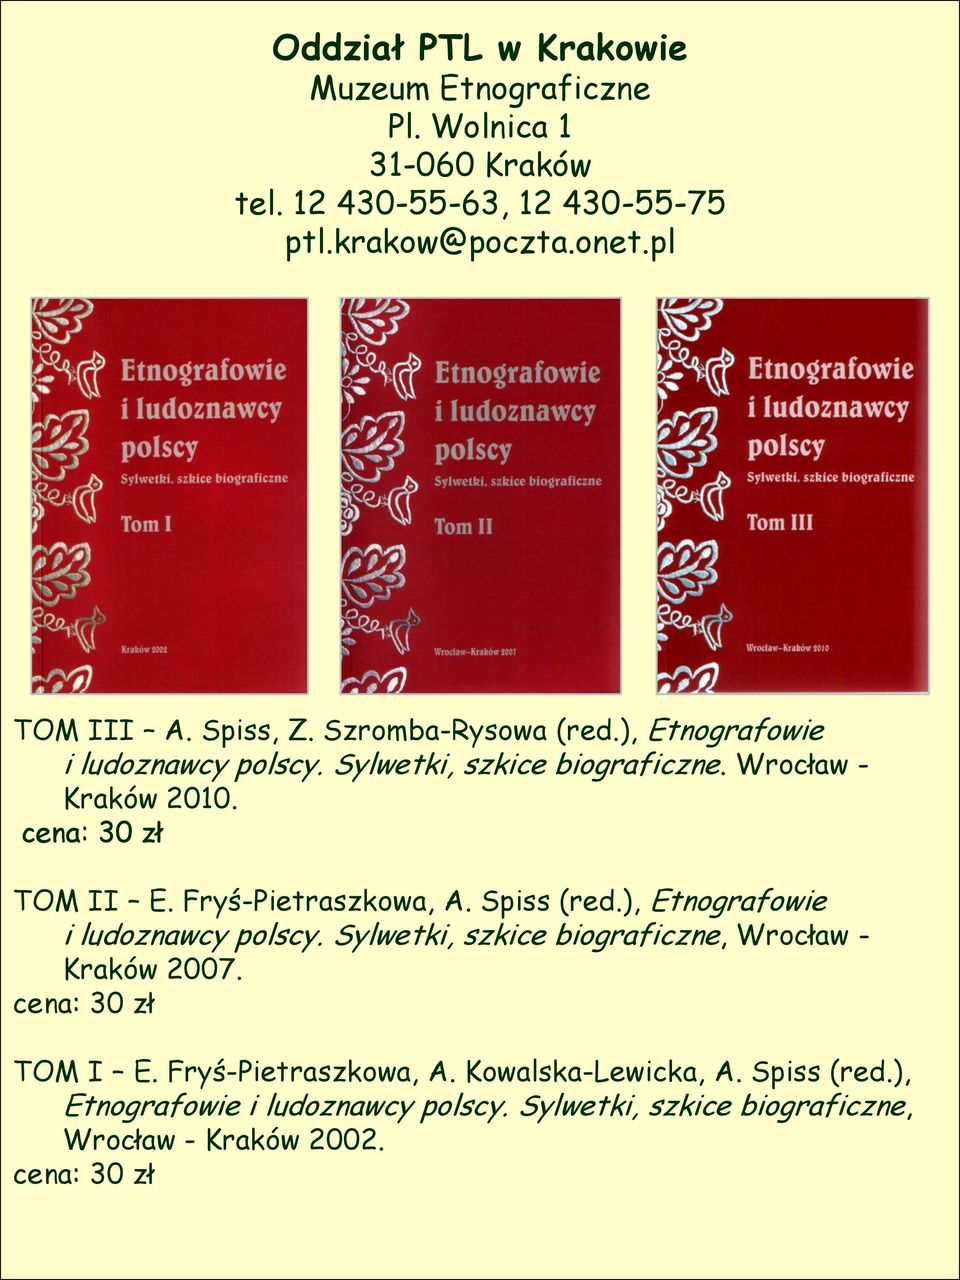 TOM II E. Fryś-Pietraszkowa, A. Spiss (red.), Etnografowie i ludoznawcy polscy. Sylwetki, szkice biograficzne, Wrocław - Kraków 2007.